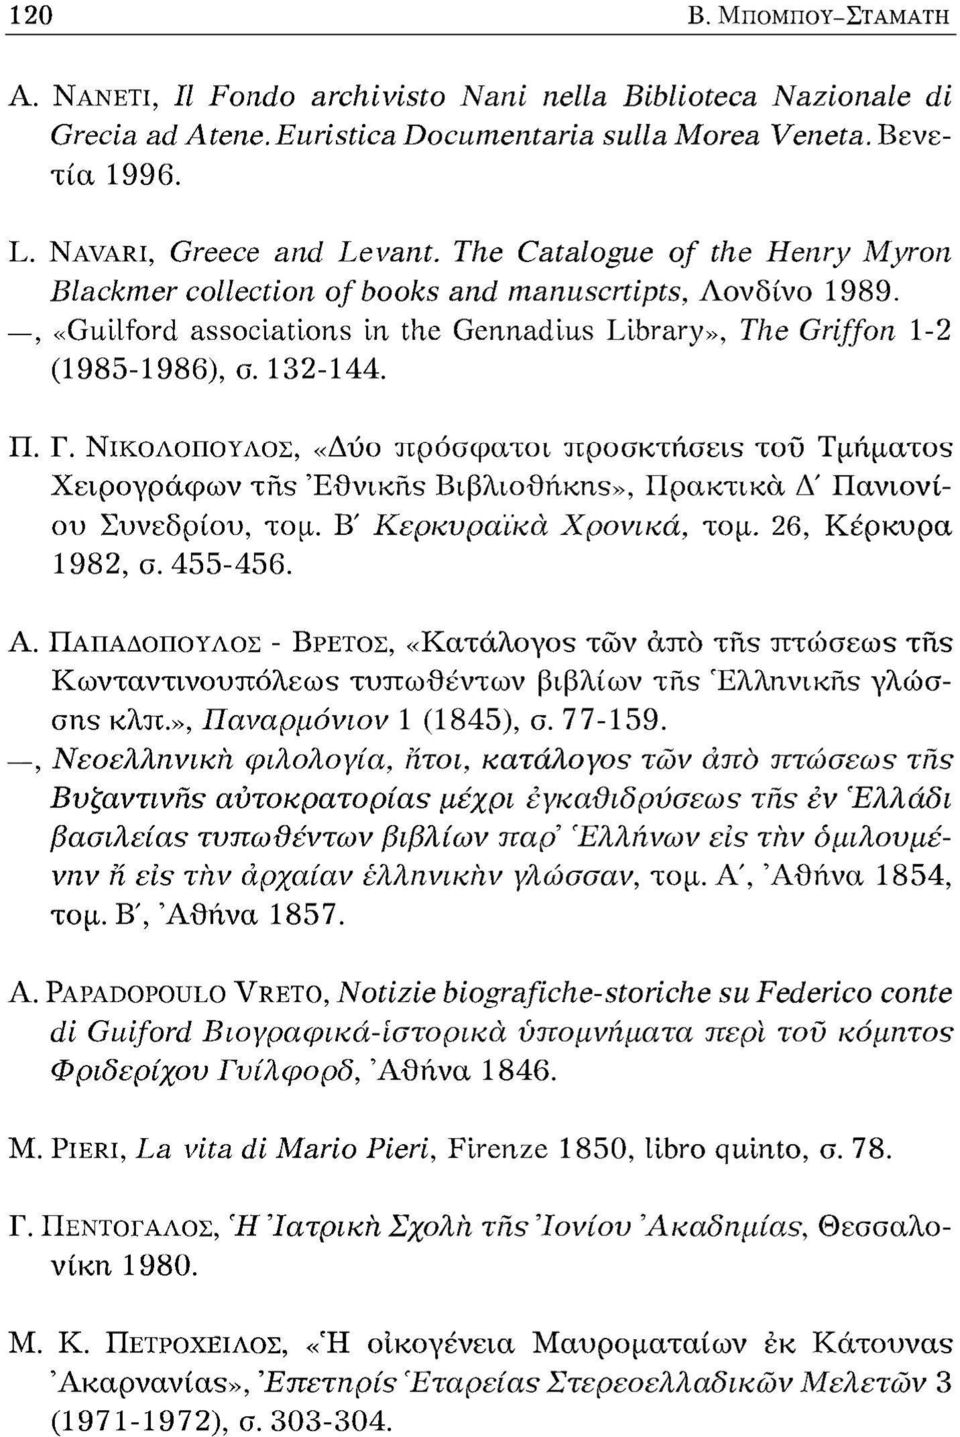 ΝΙΚΟΛΟΠΟΥΛΟΣ, «Δύο πρόσφατοι προσκτήσεις τοΰ Τμήματος Χειρογράφων της Εθνικής Βιβλιοθήκης», Πρακτικά Δ' Πανιονίου Συνεδρίου, τομ. Β' Κερκυραϊκά Χρονικά, τομ. 26, Κέρκυρα 1982, σ. 455-456. Α.